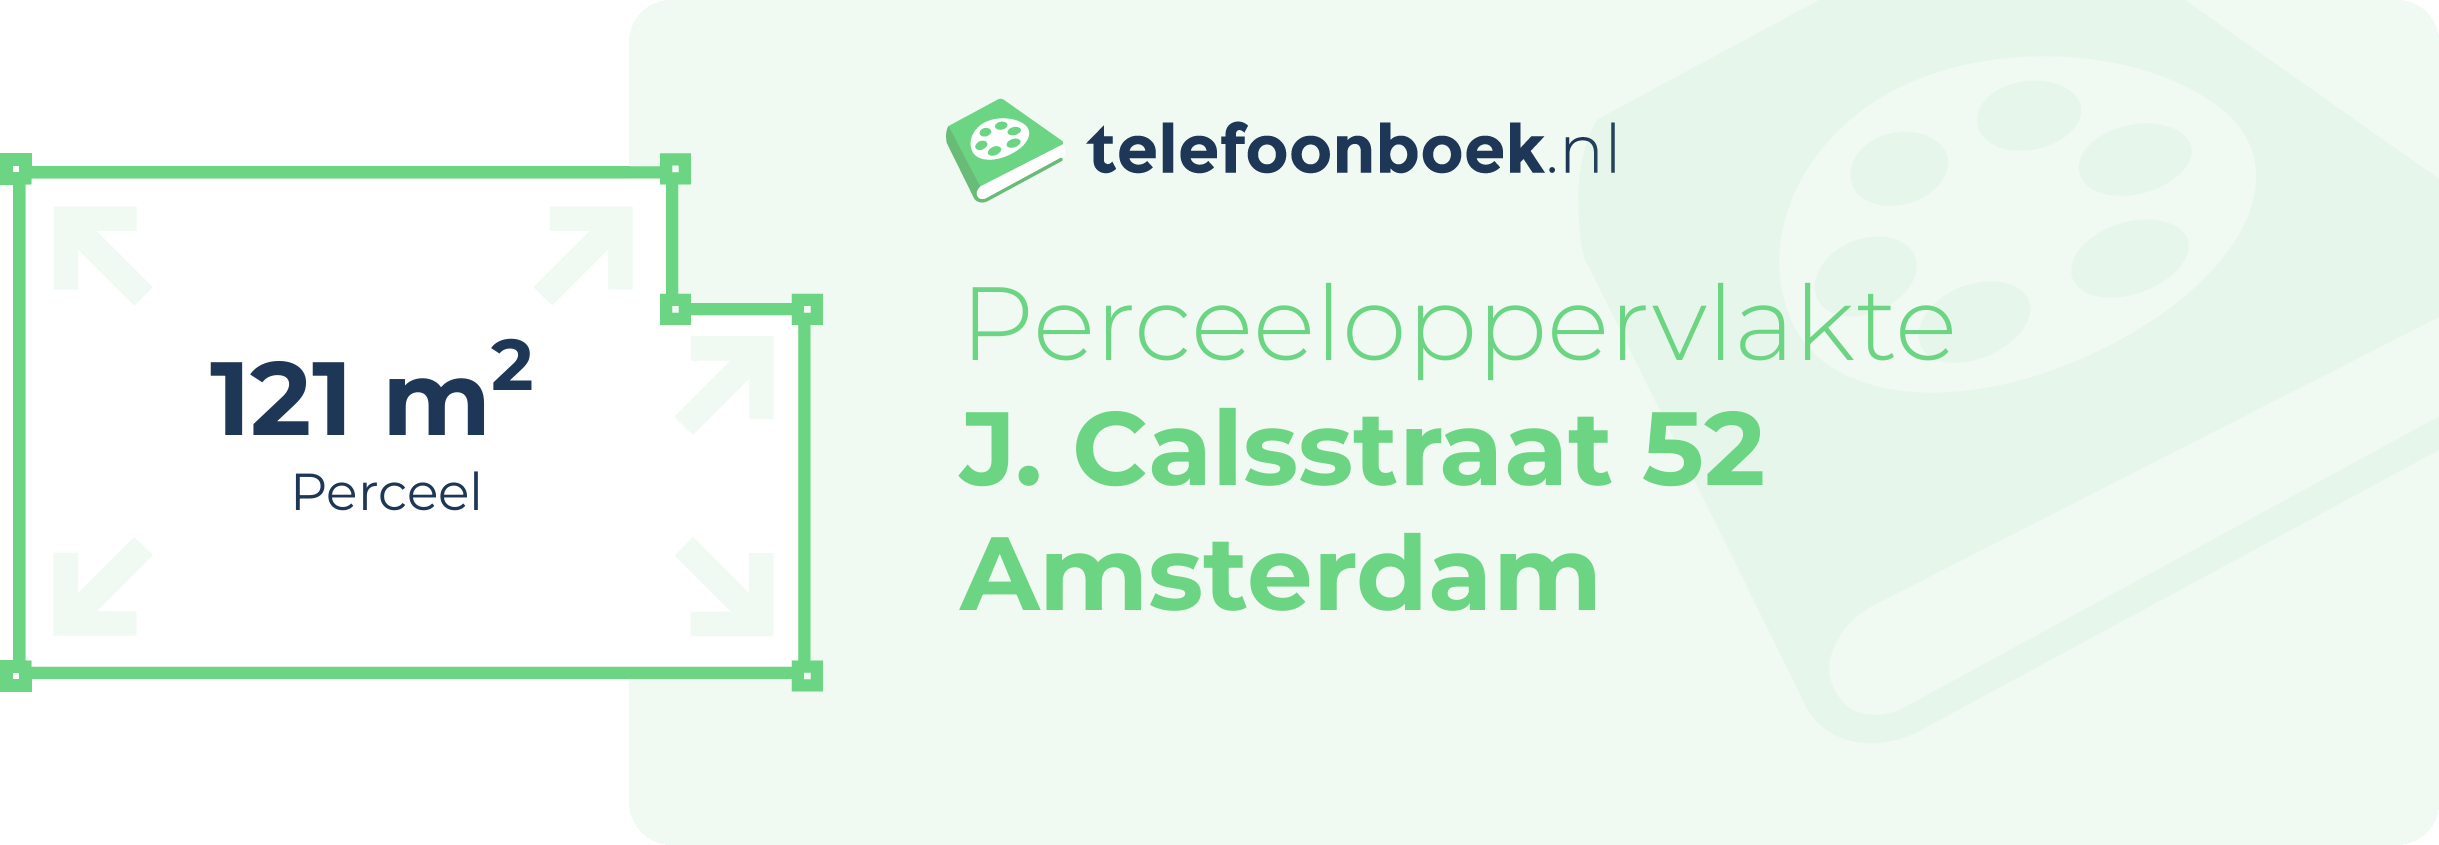 Perceeloppervlakte J. Calsstraat 52 Amsterdam